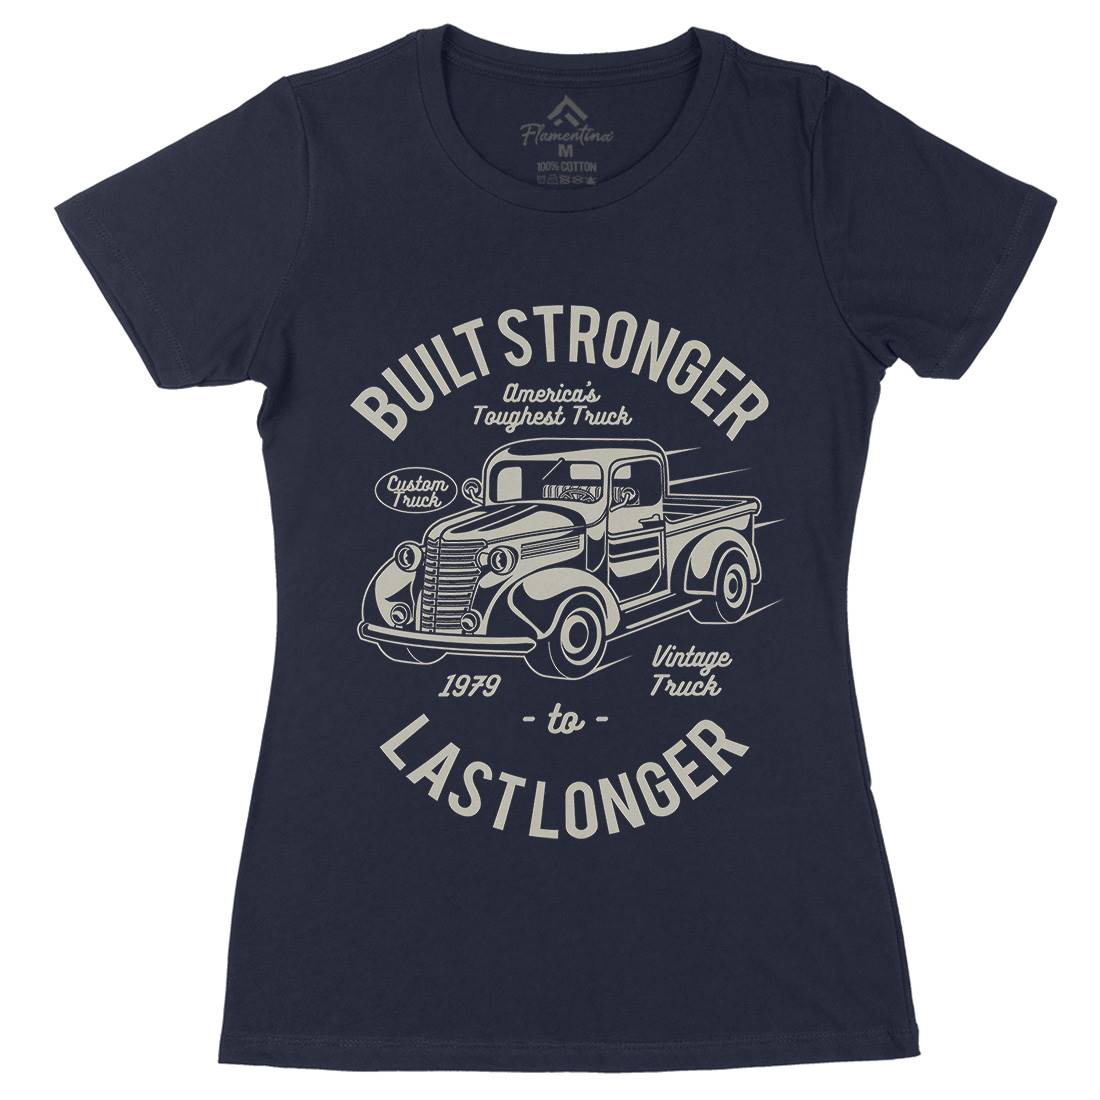 Built Stronger Womens Organic Crew Neck T-Shirt Cars A023